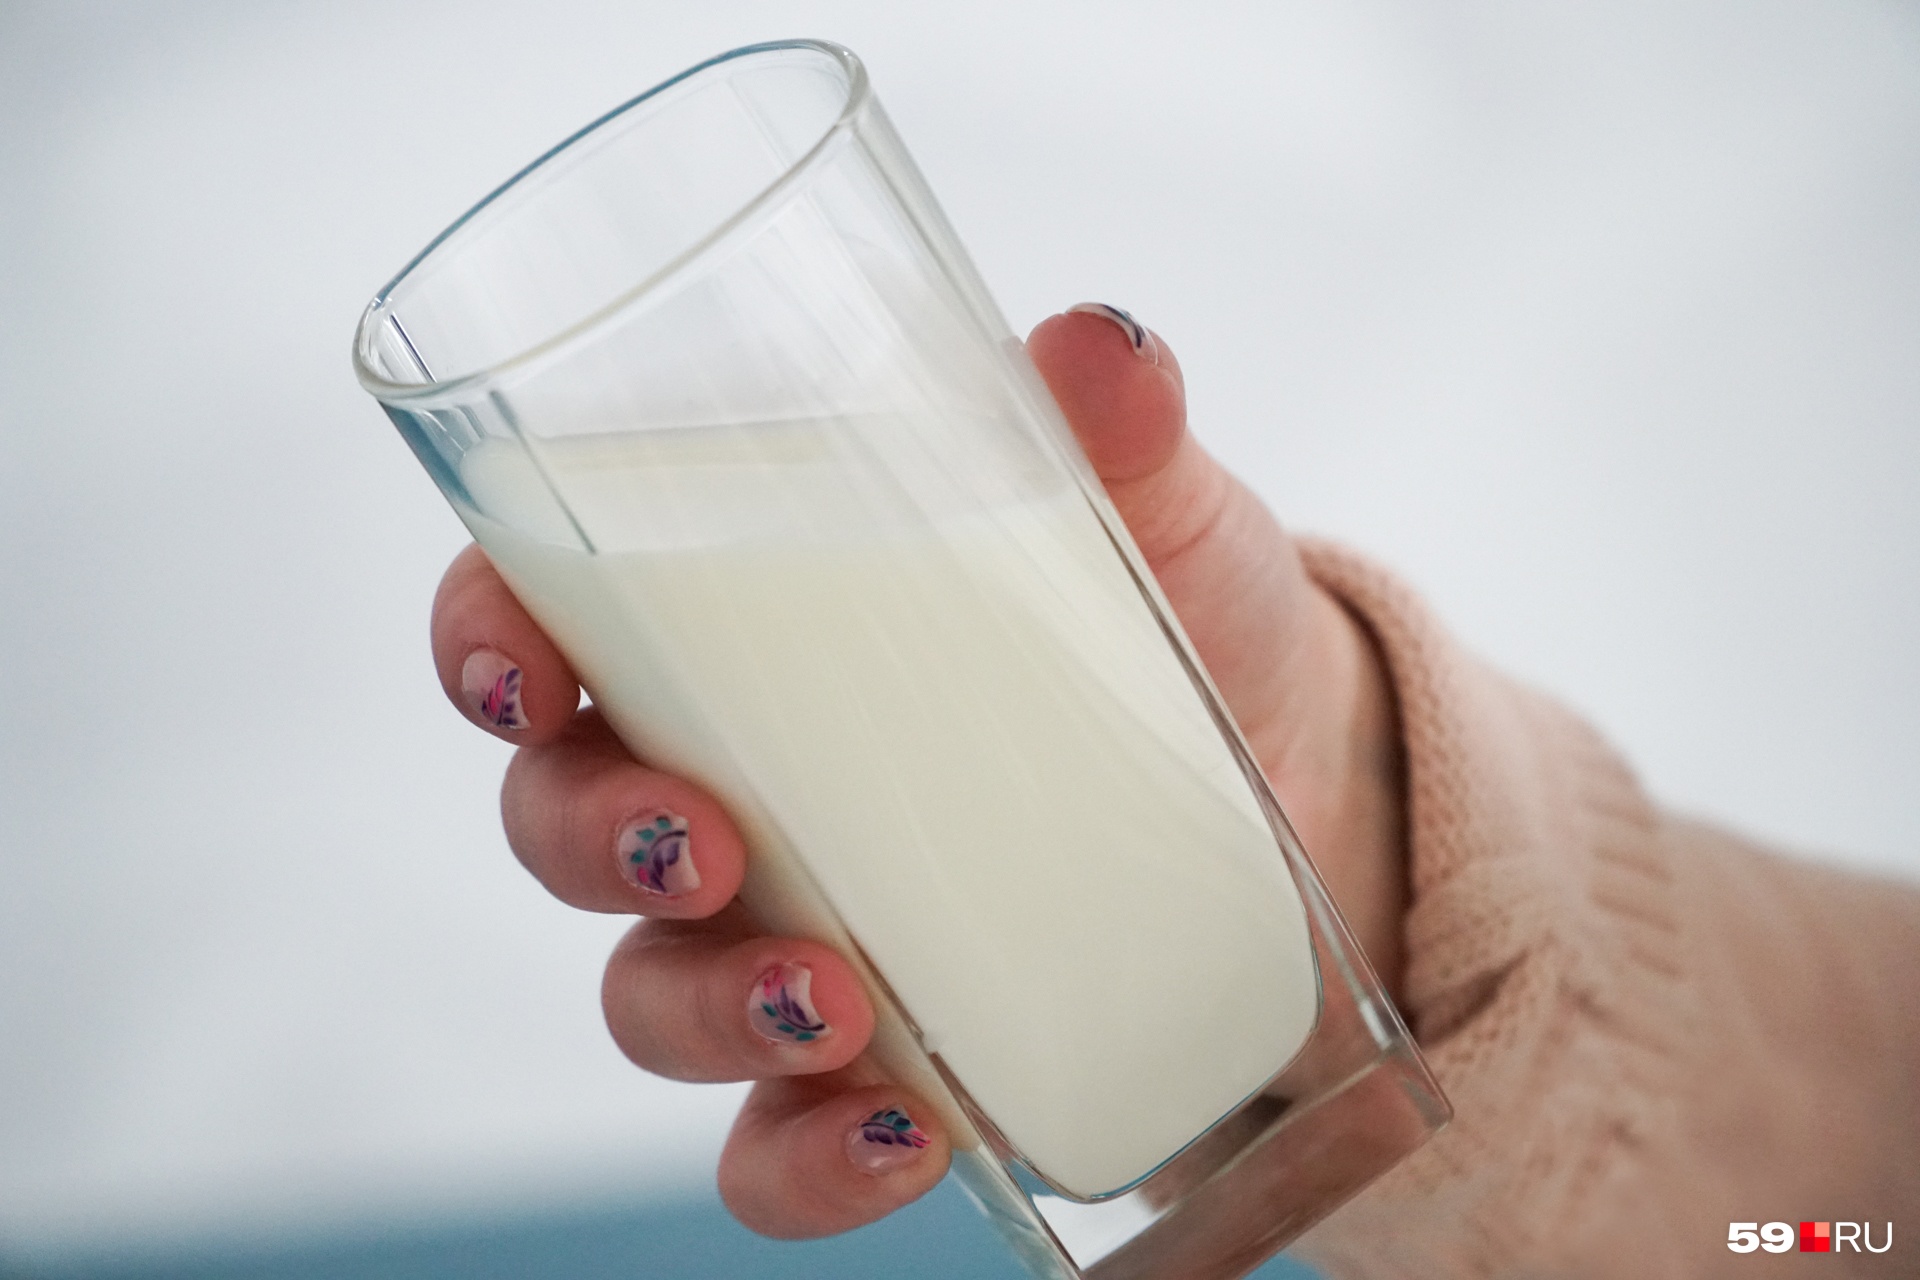 Молоко из Прикамья эксперты оценили довольно высоко — минимум в 4 балла